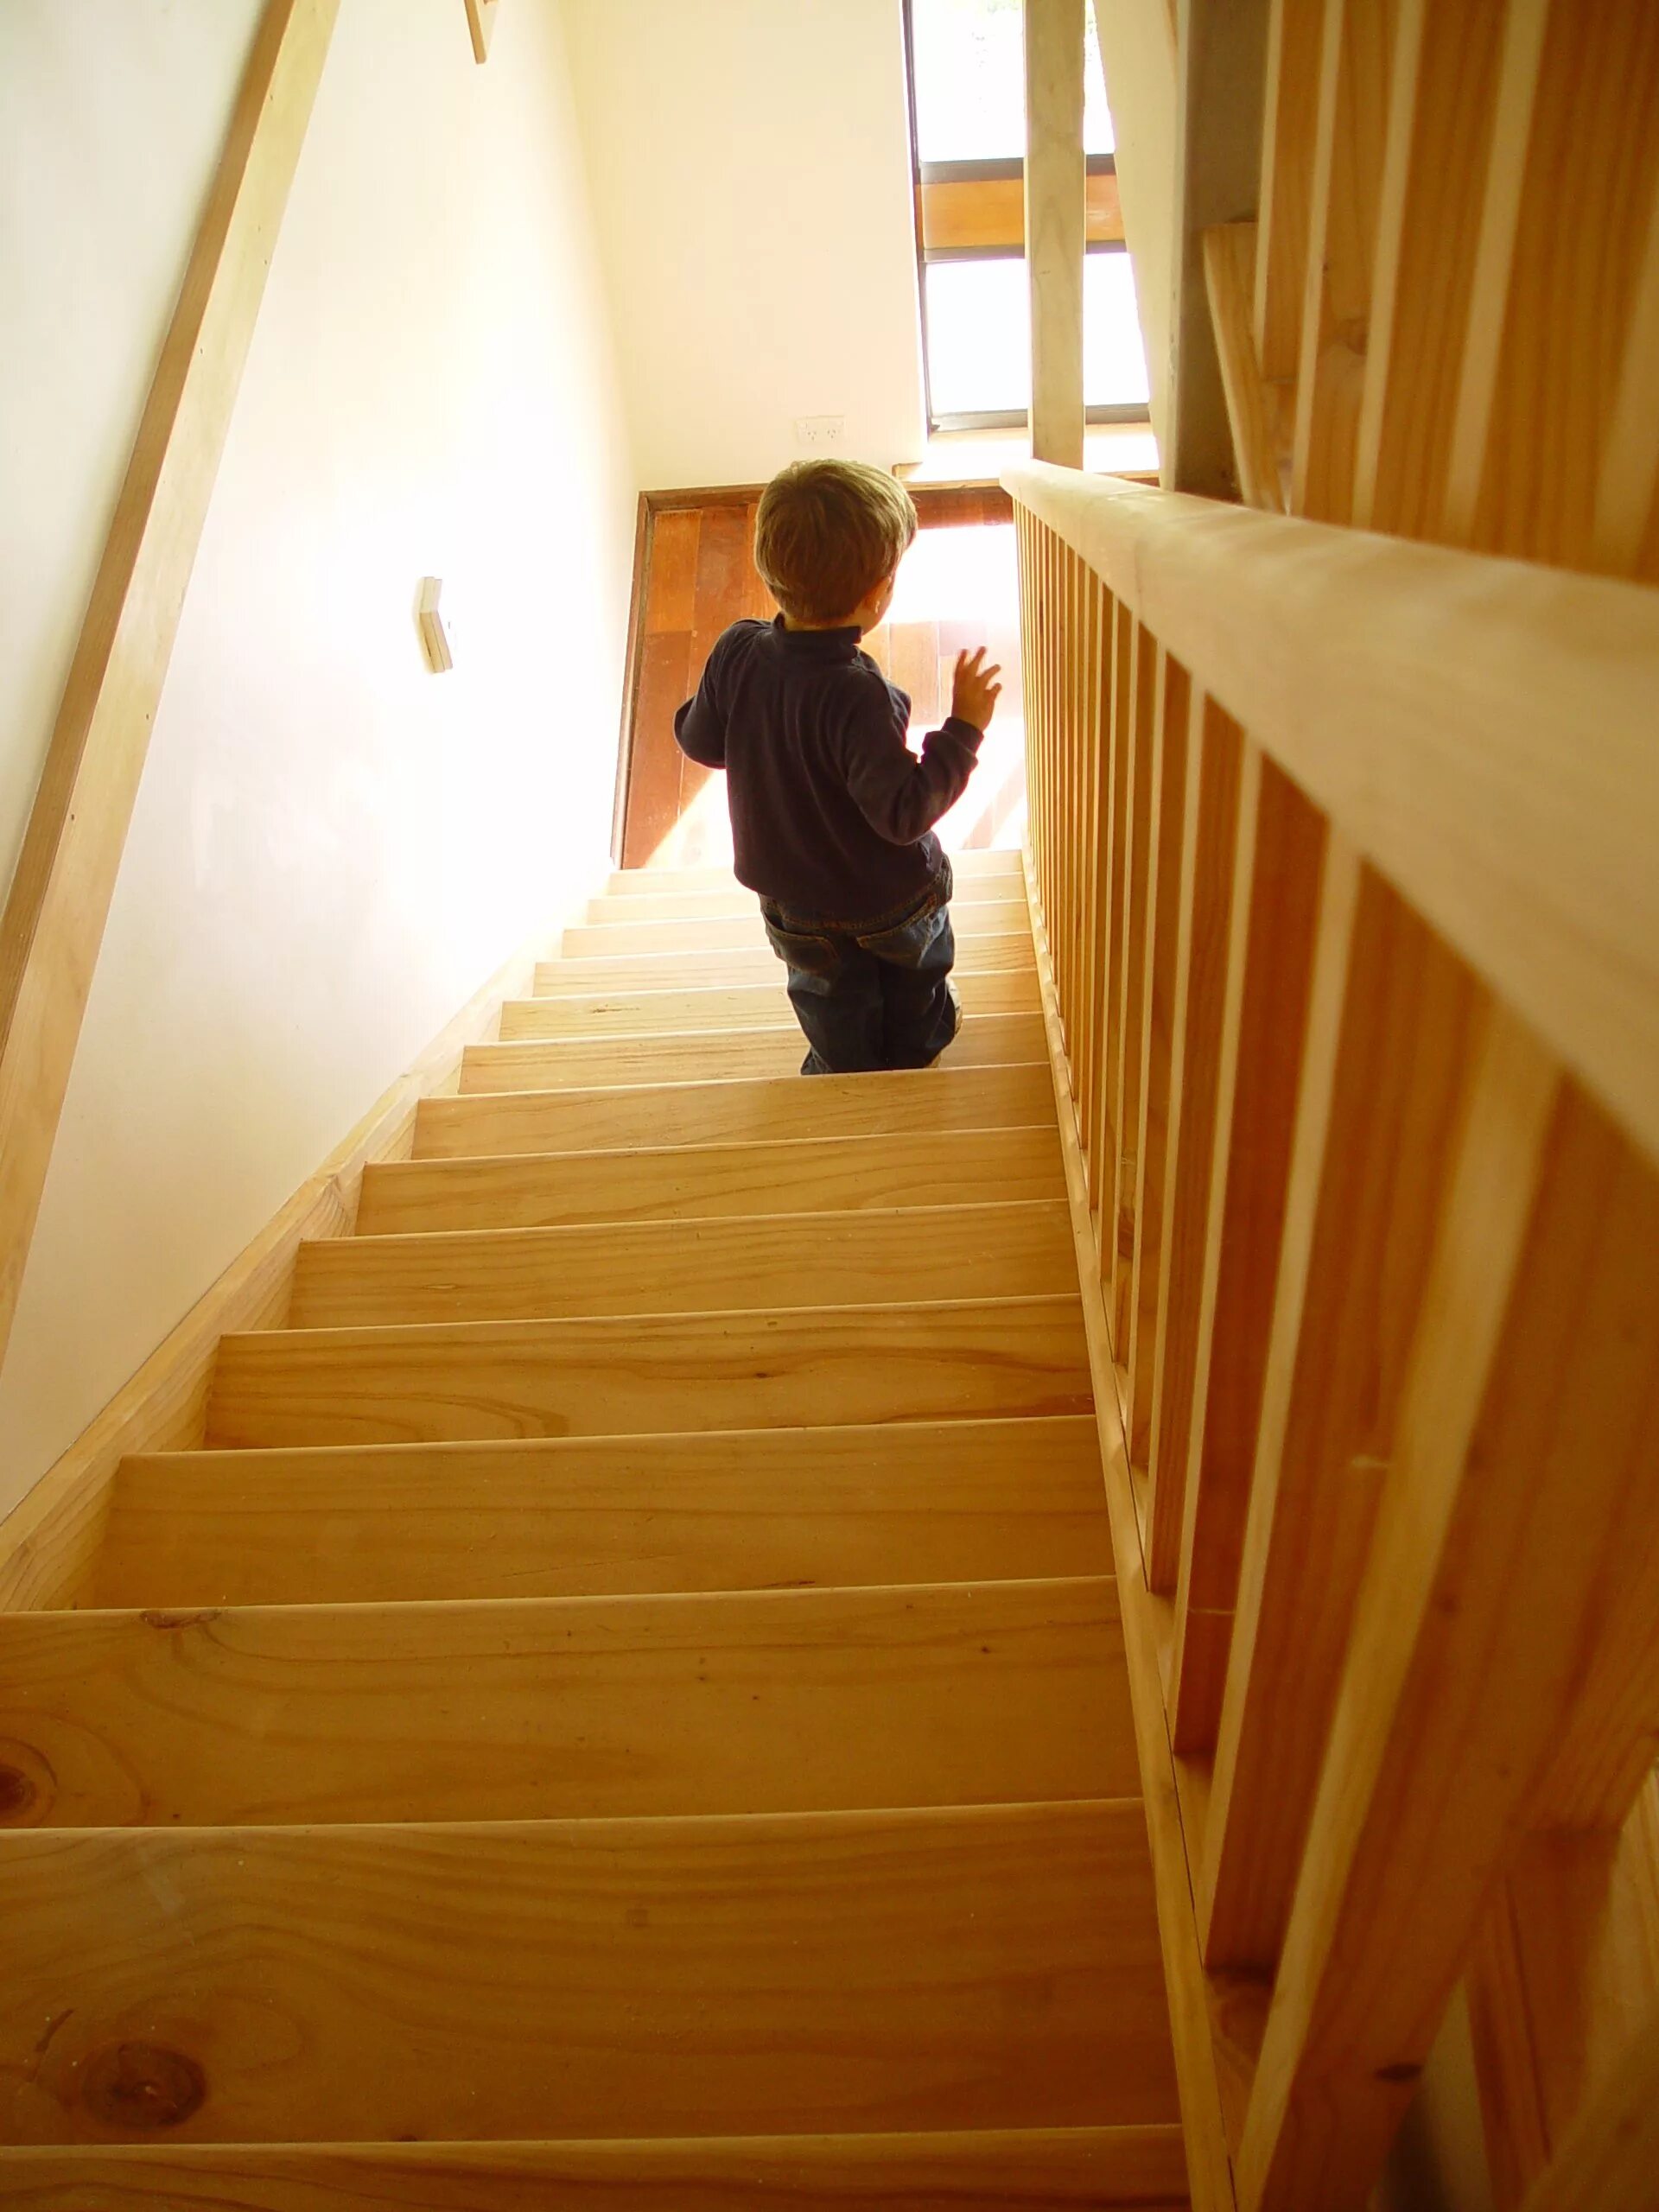 Текст из коридора по деревянной лестнице дети. Лестница для детей. Лестница деревянная детская. Фотосессия на лестнице в доме. Дошкольник на лестнице.